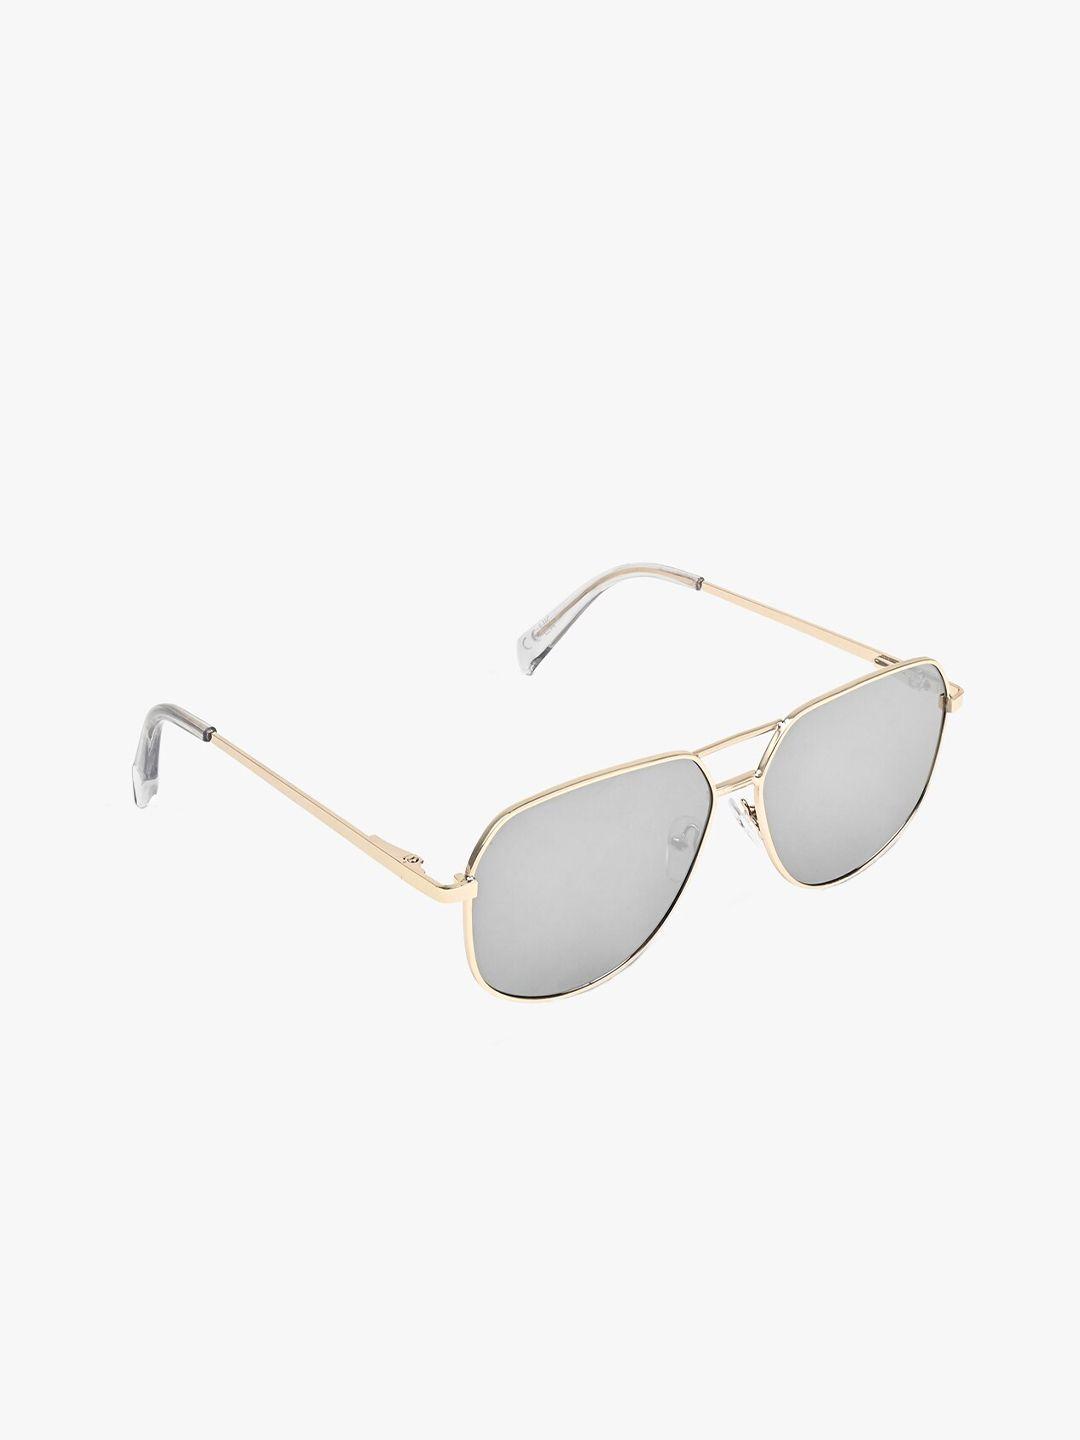 aldo men aviator sunglasses regular lens sunglasses